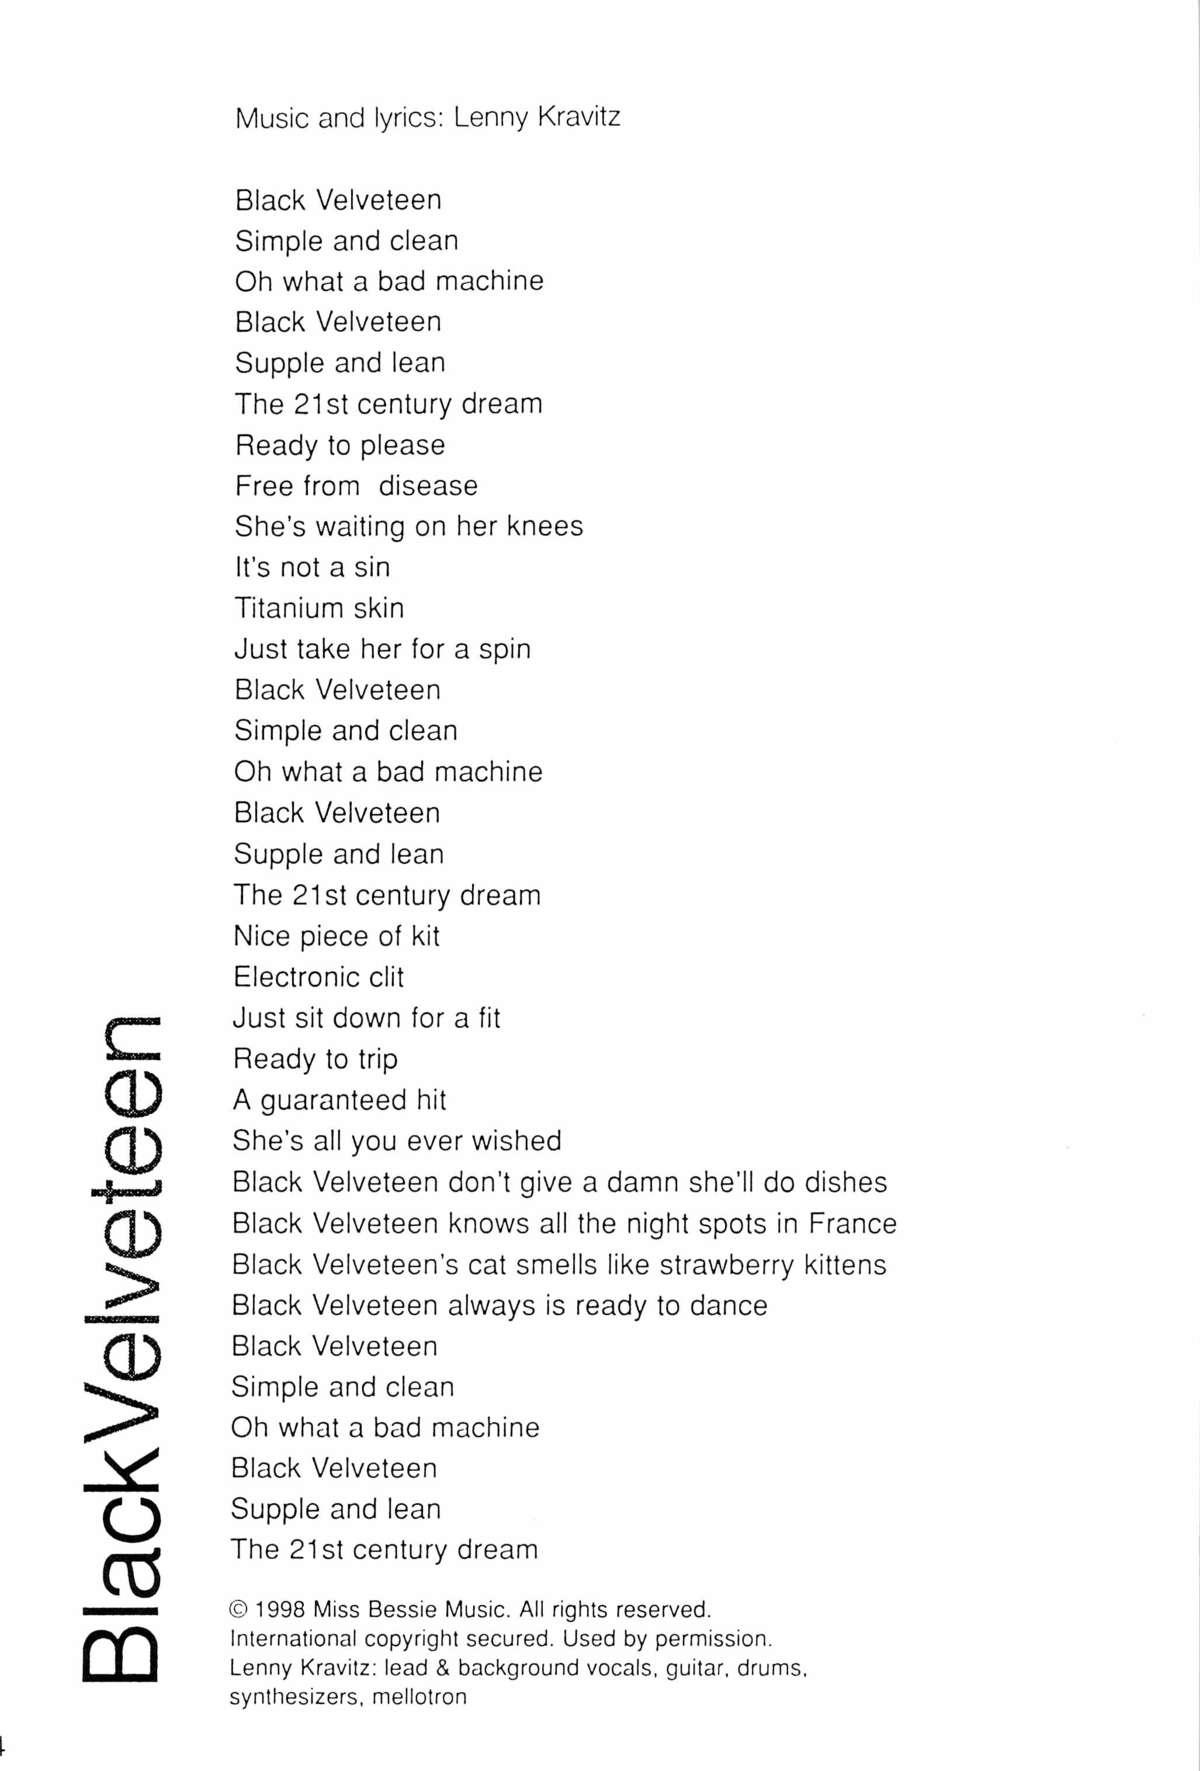 Black Velveteen 33